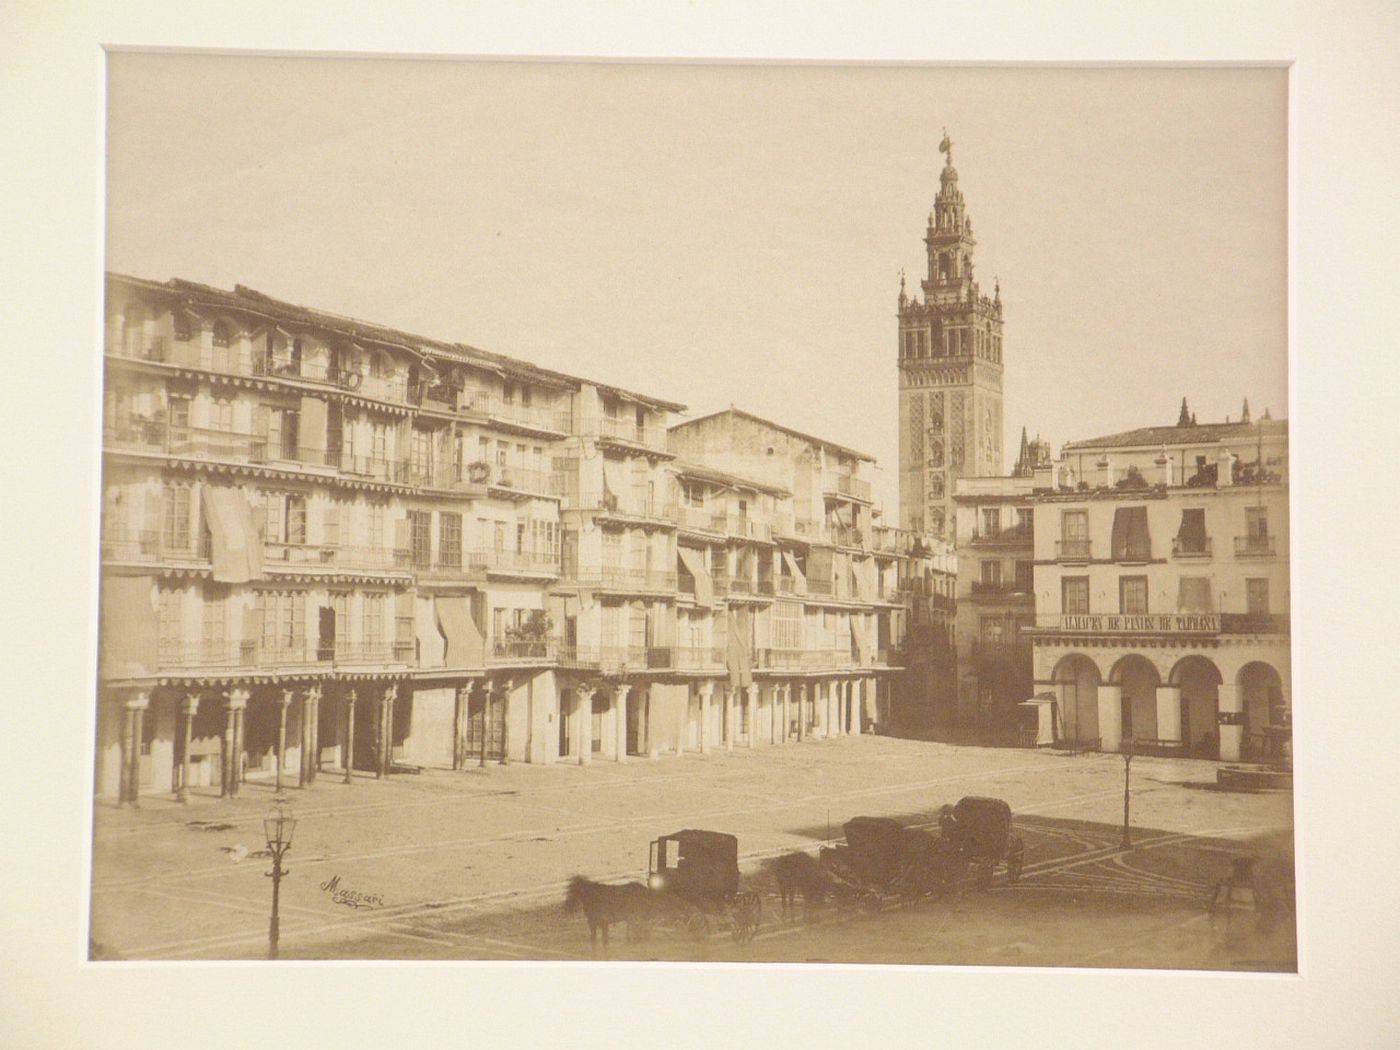 Seville, plaza de San francisco or del Ayuntamiento or del Constitucion